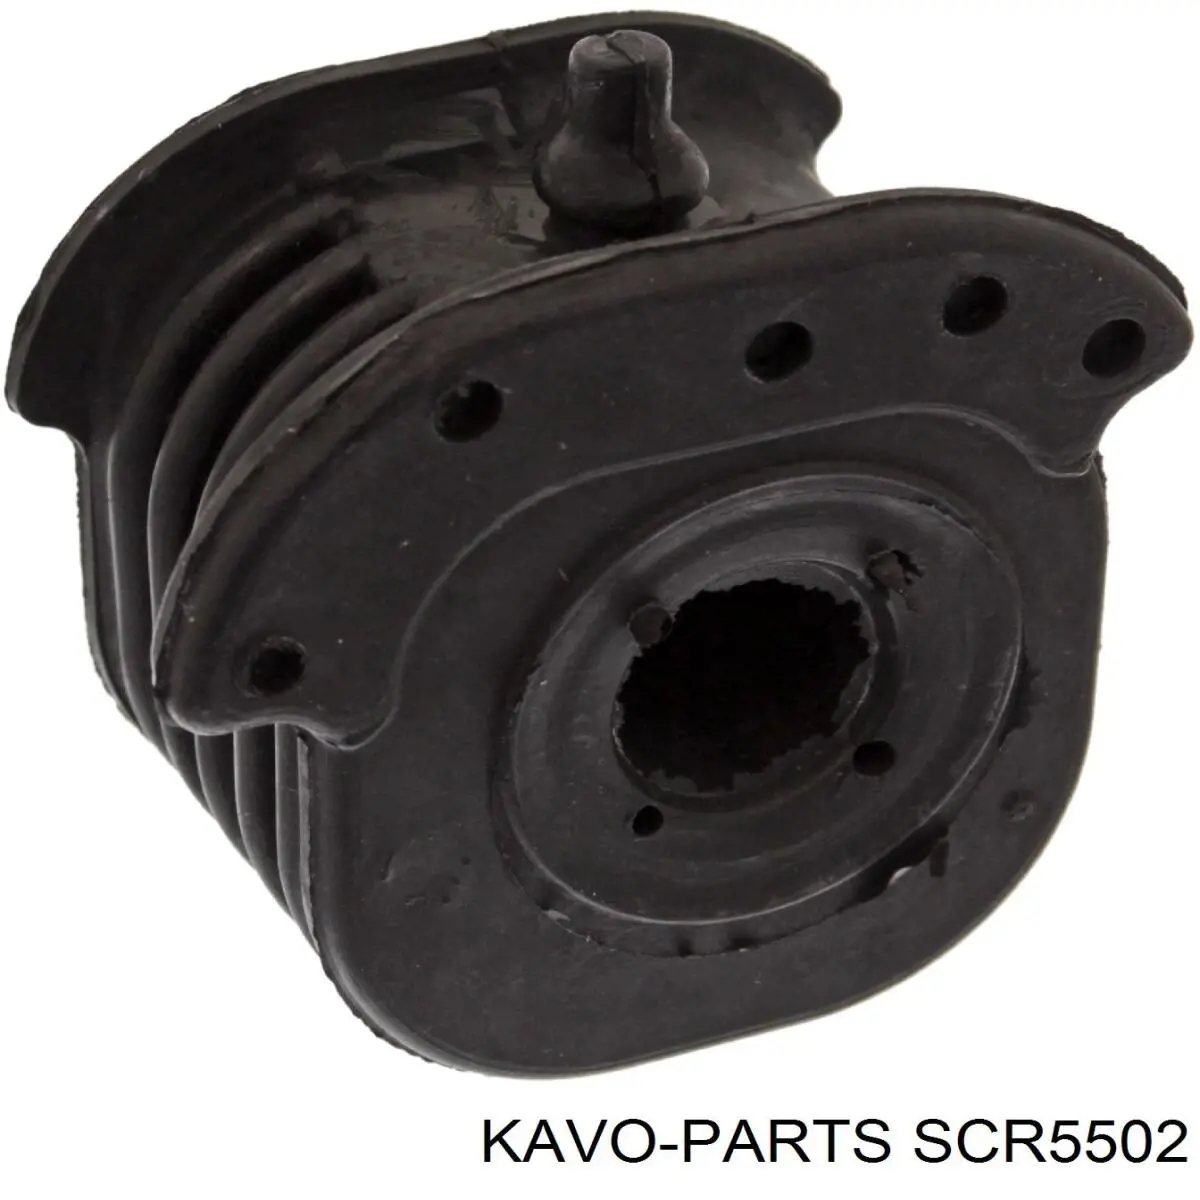 SCR-5502 Kavo Parts silentblock de suspensión delantero inferior